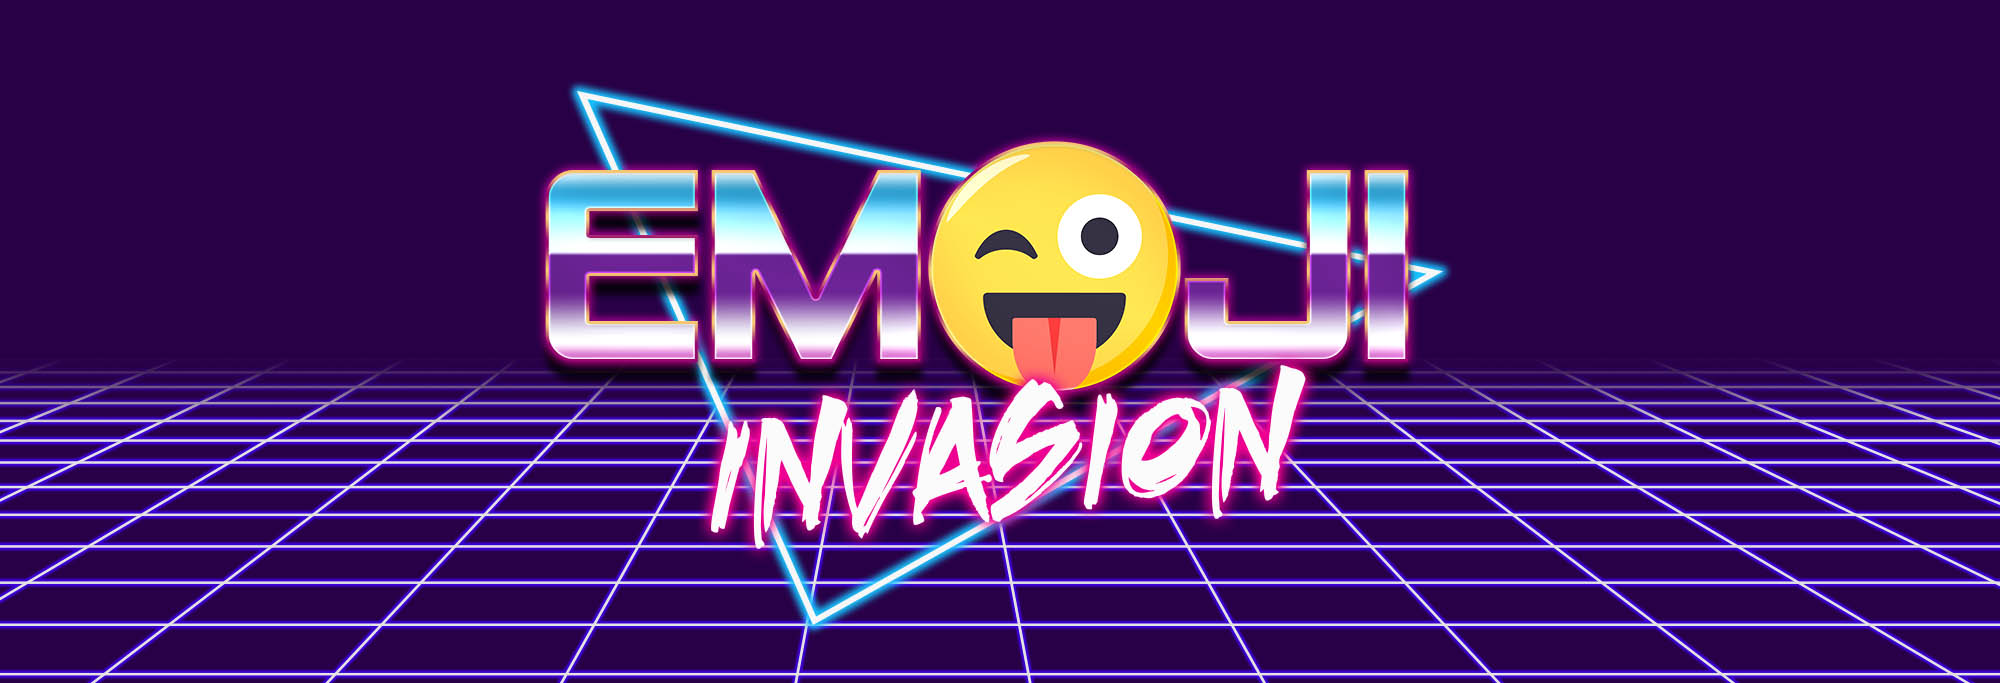 Emoji Invasion